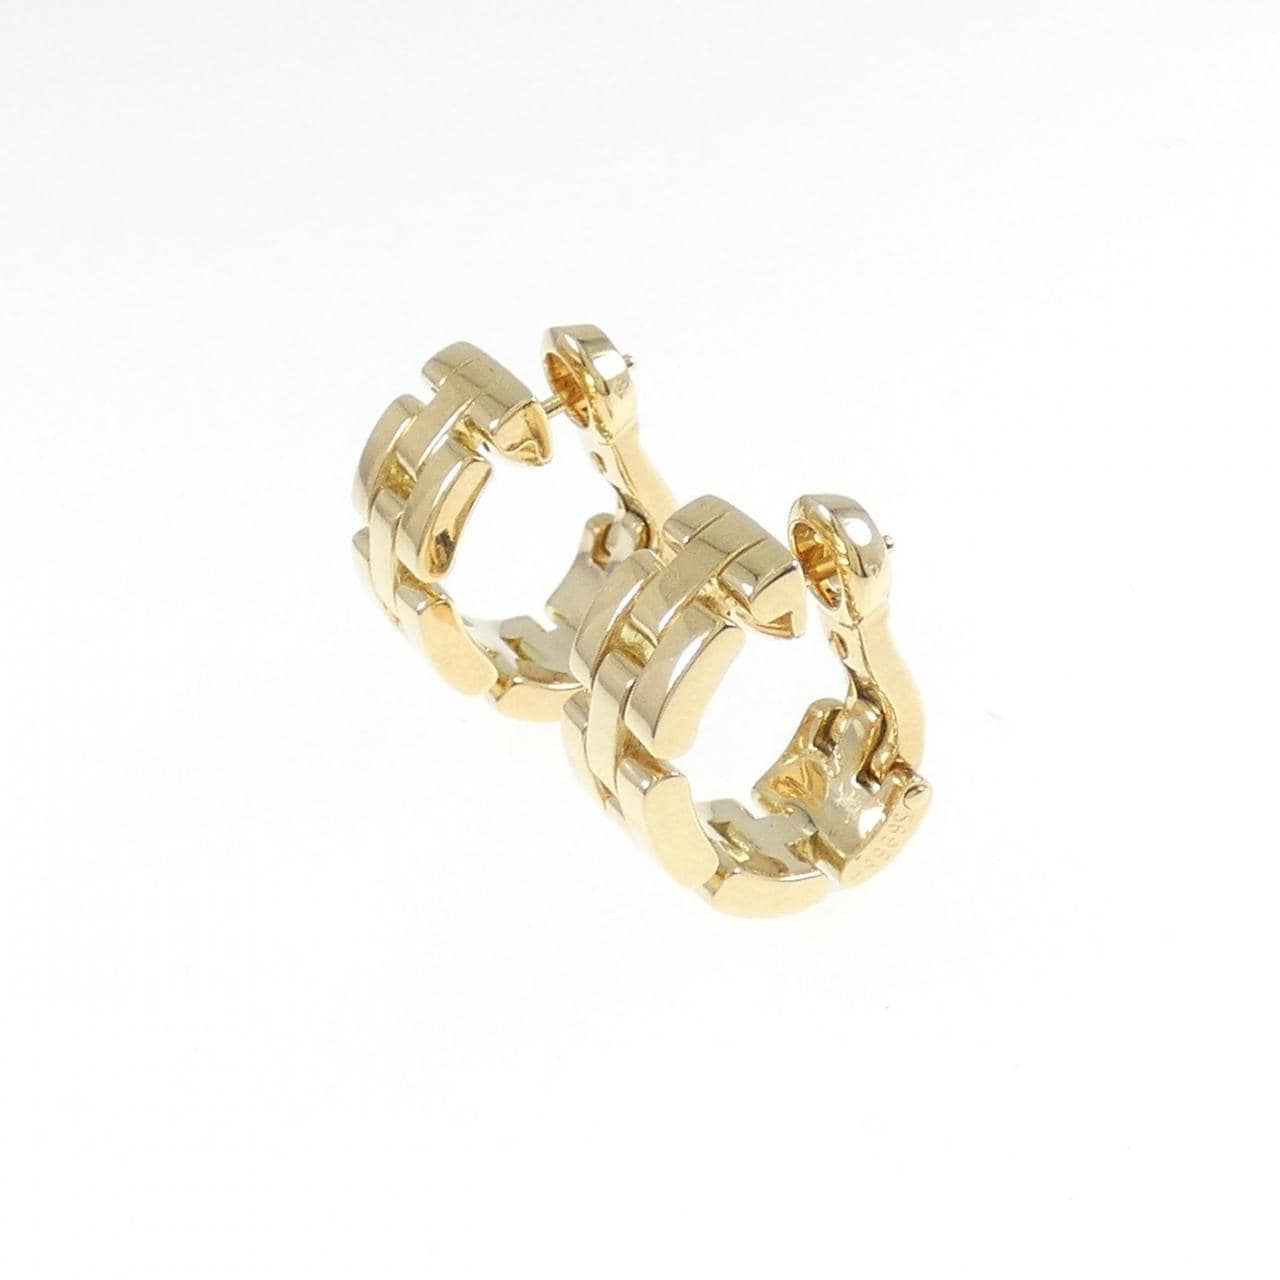 Cartier Maillon Panthère earrings